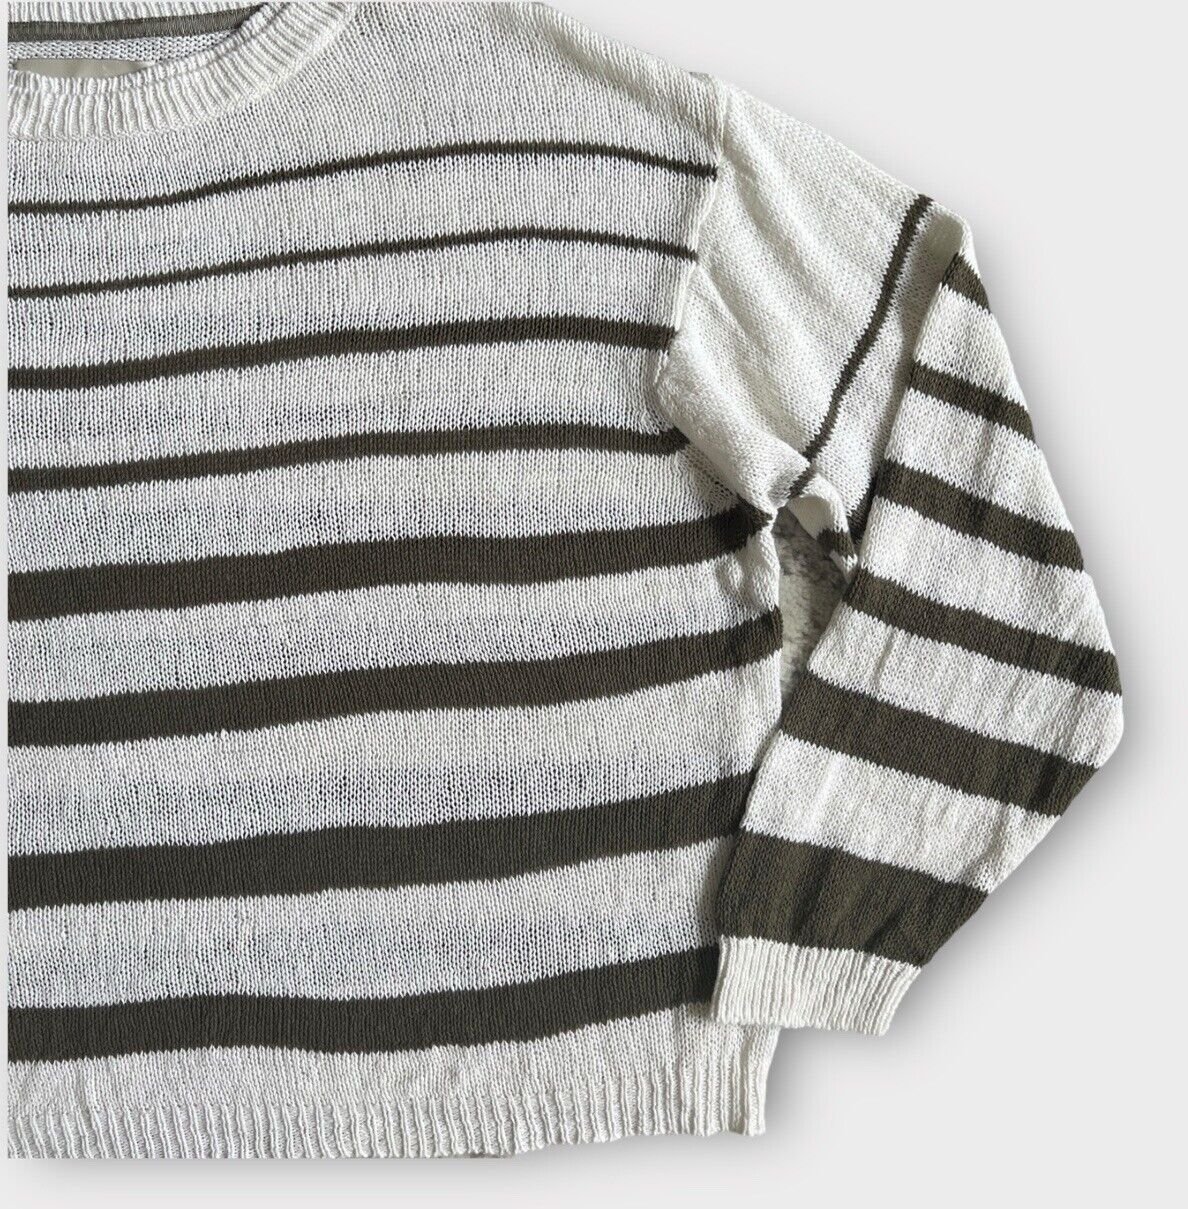 Popular Brochu Walker Reed Stripe Linen Sweater Salt White Size Large PpRb5n0TW Great